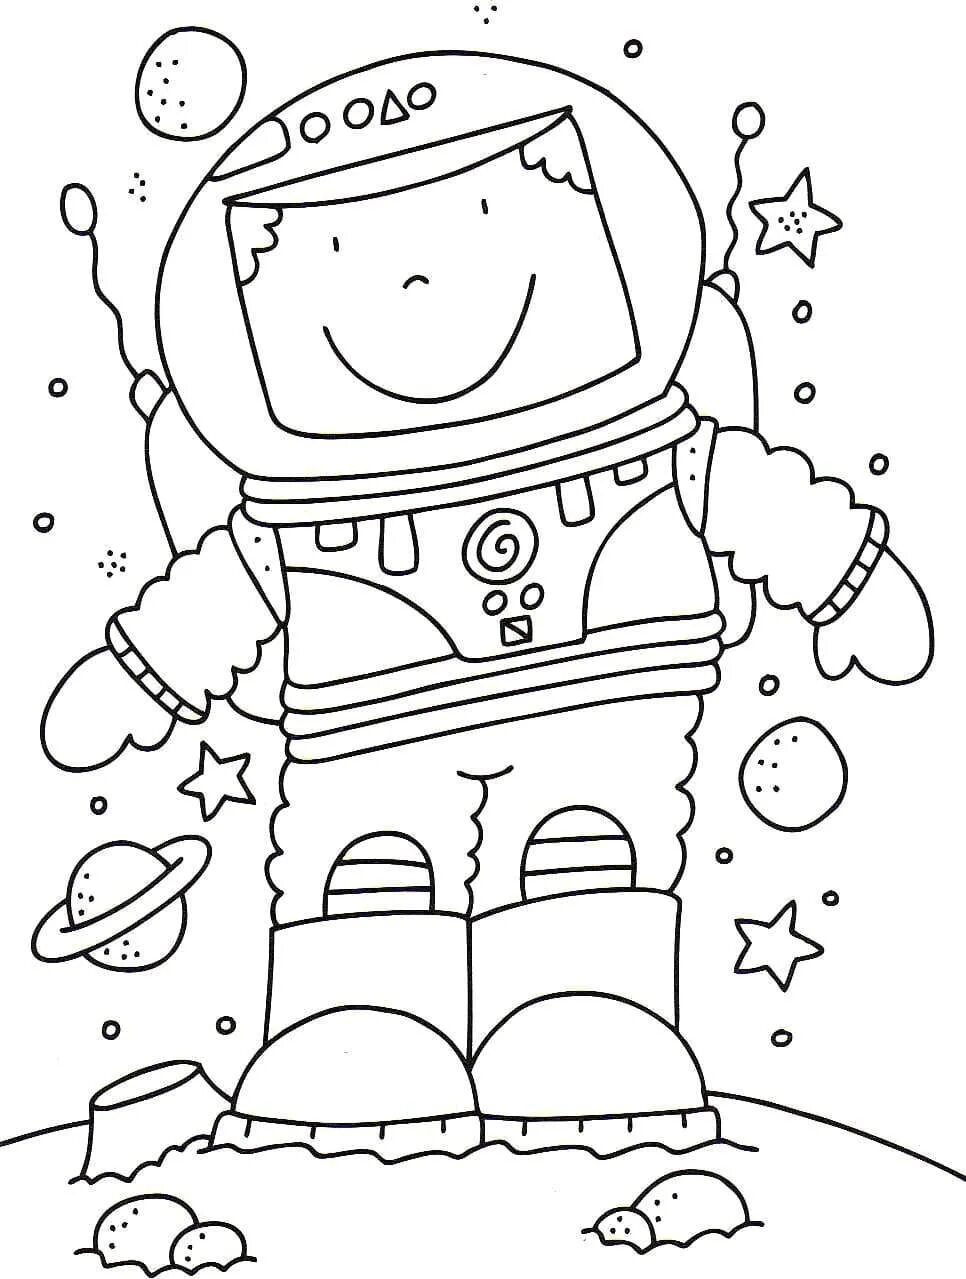 Космос раскраска для детей. Раскраска. В космосе. Космические раскраски для детей. Детские раскраски космос.